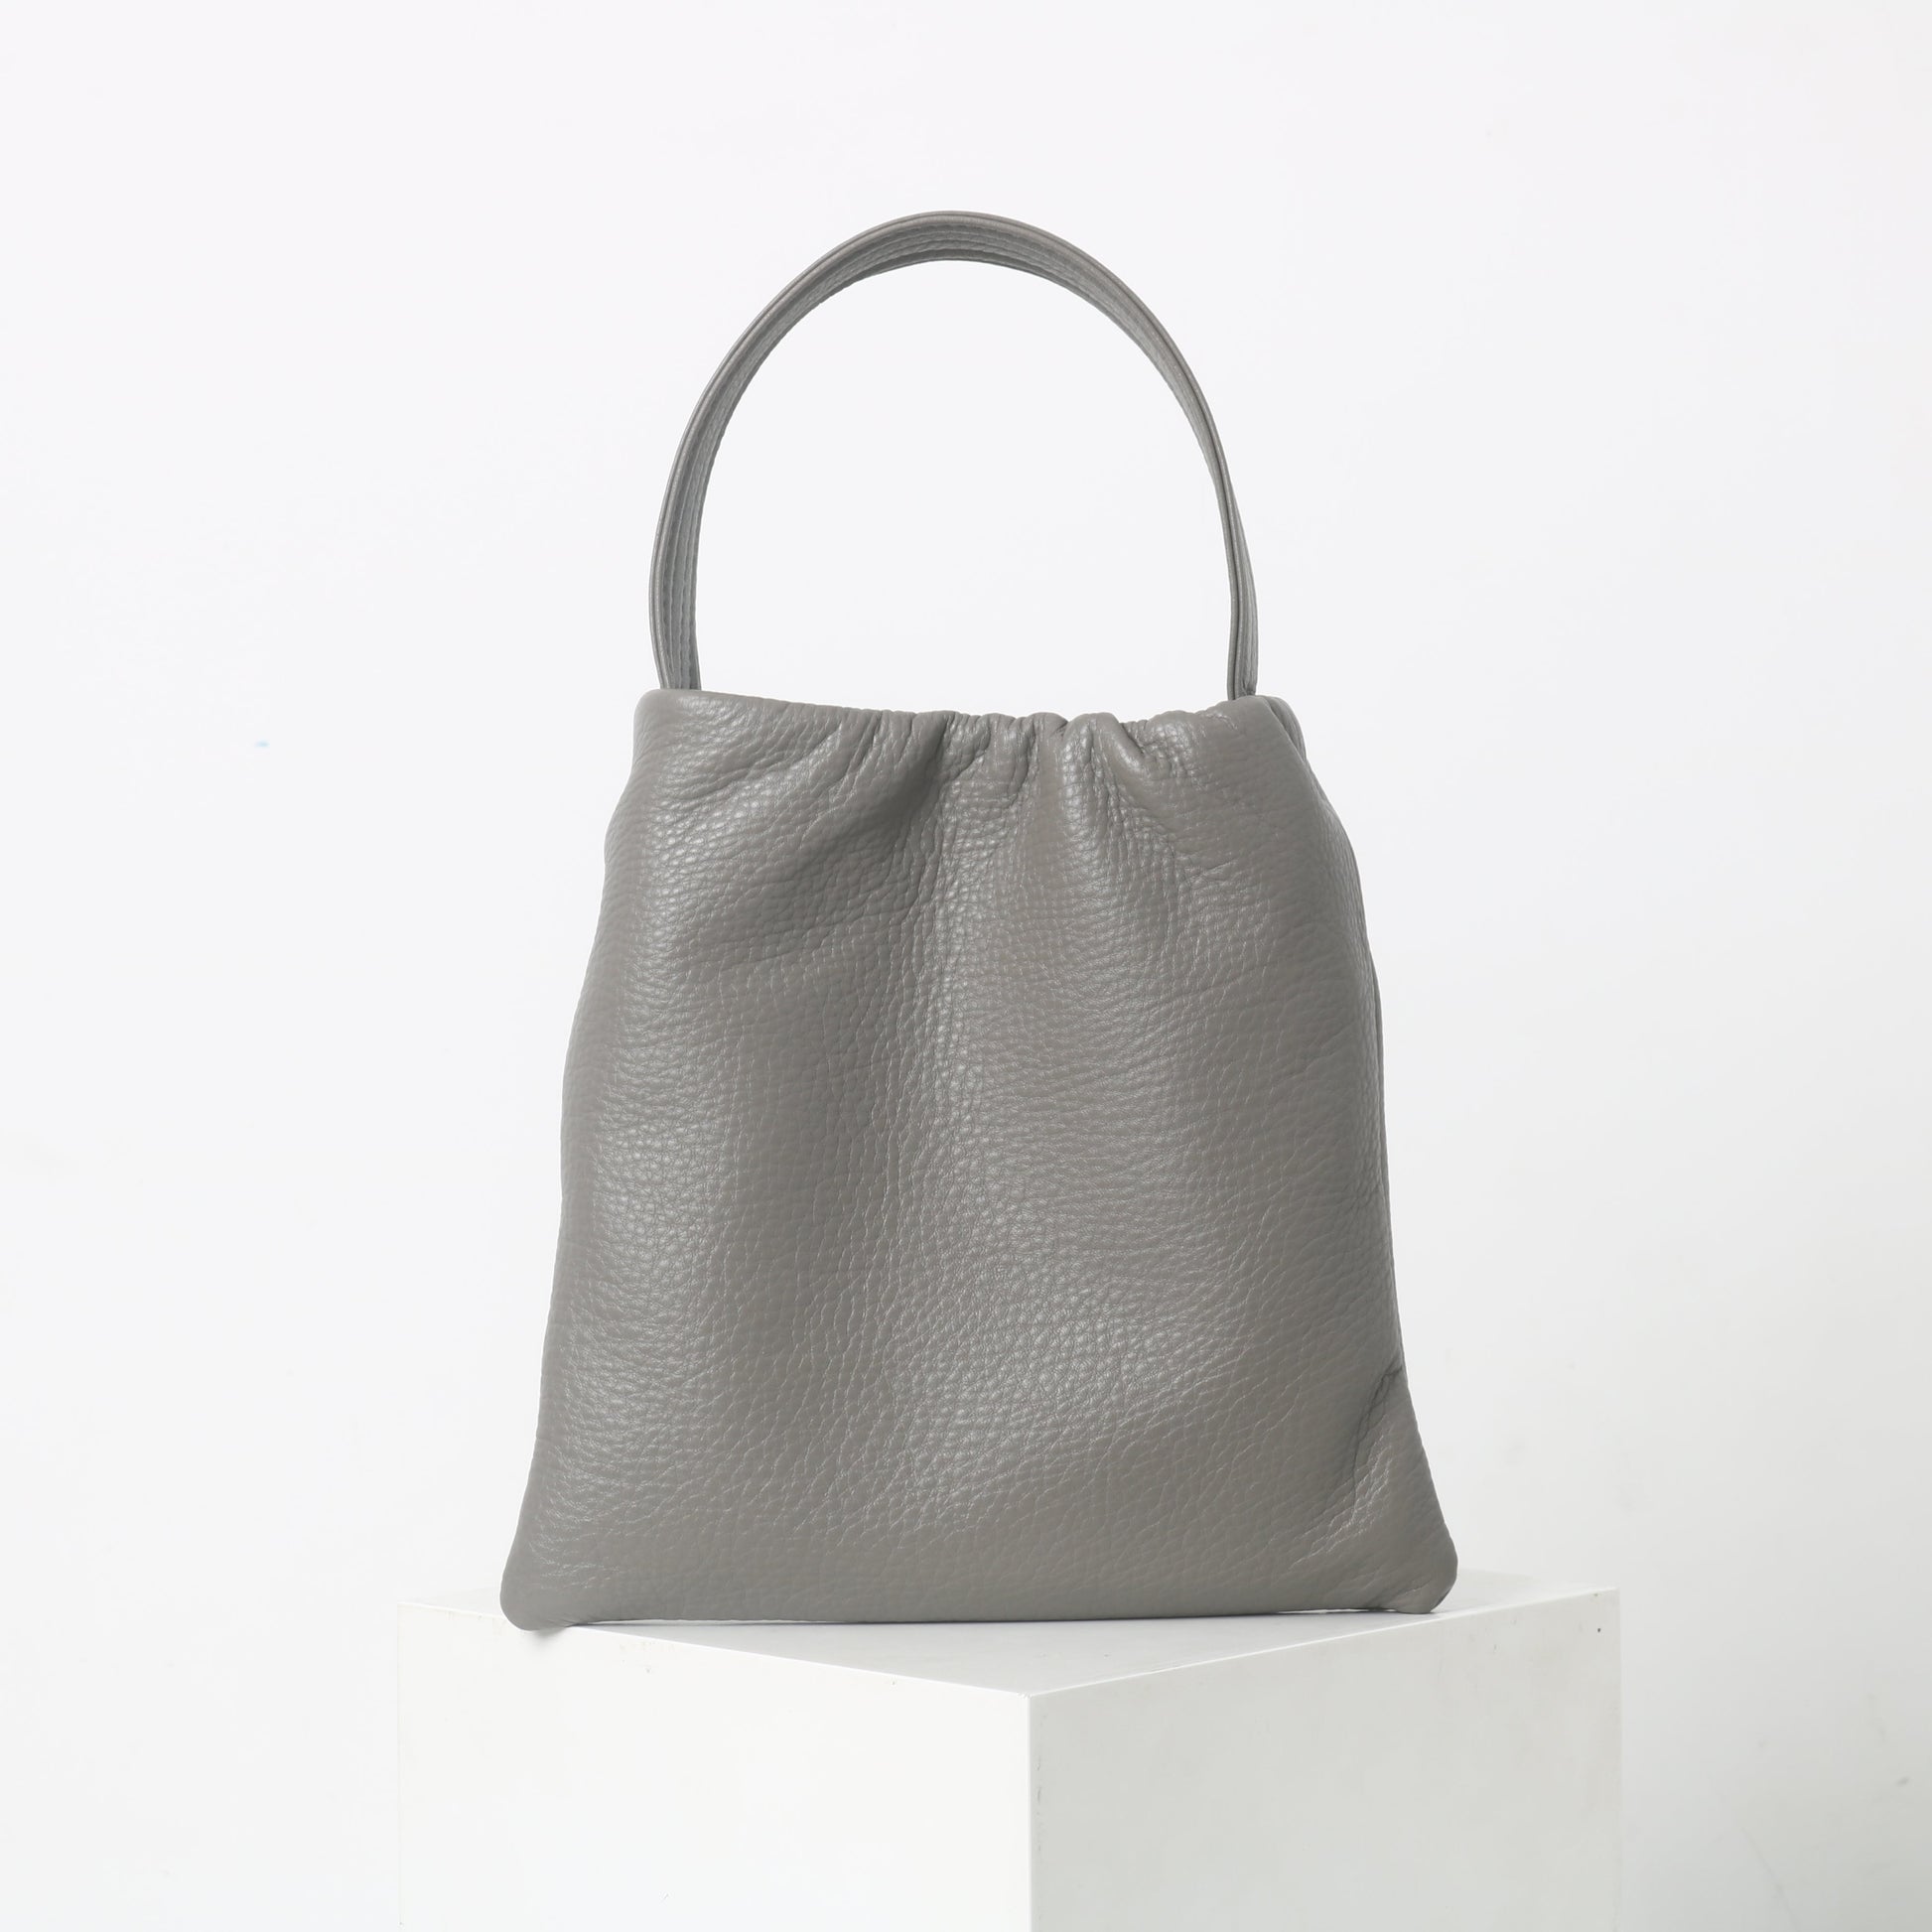 Womens Leather Hobo Shoulder Bag